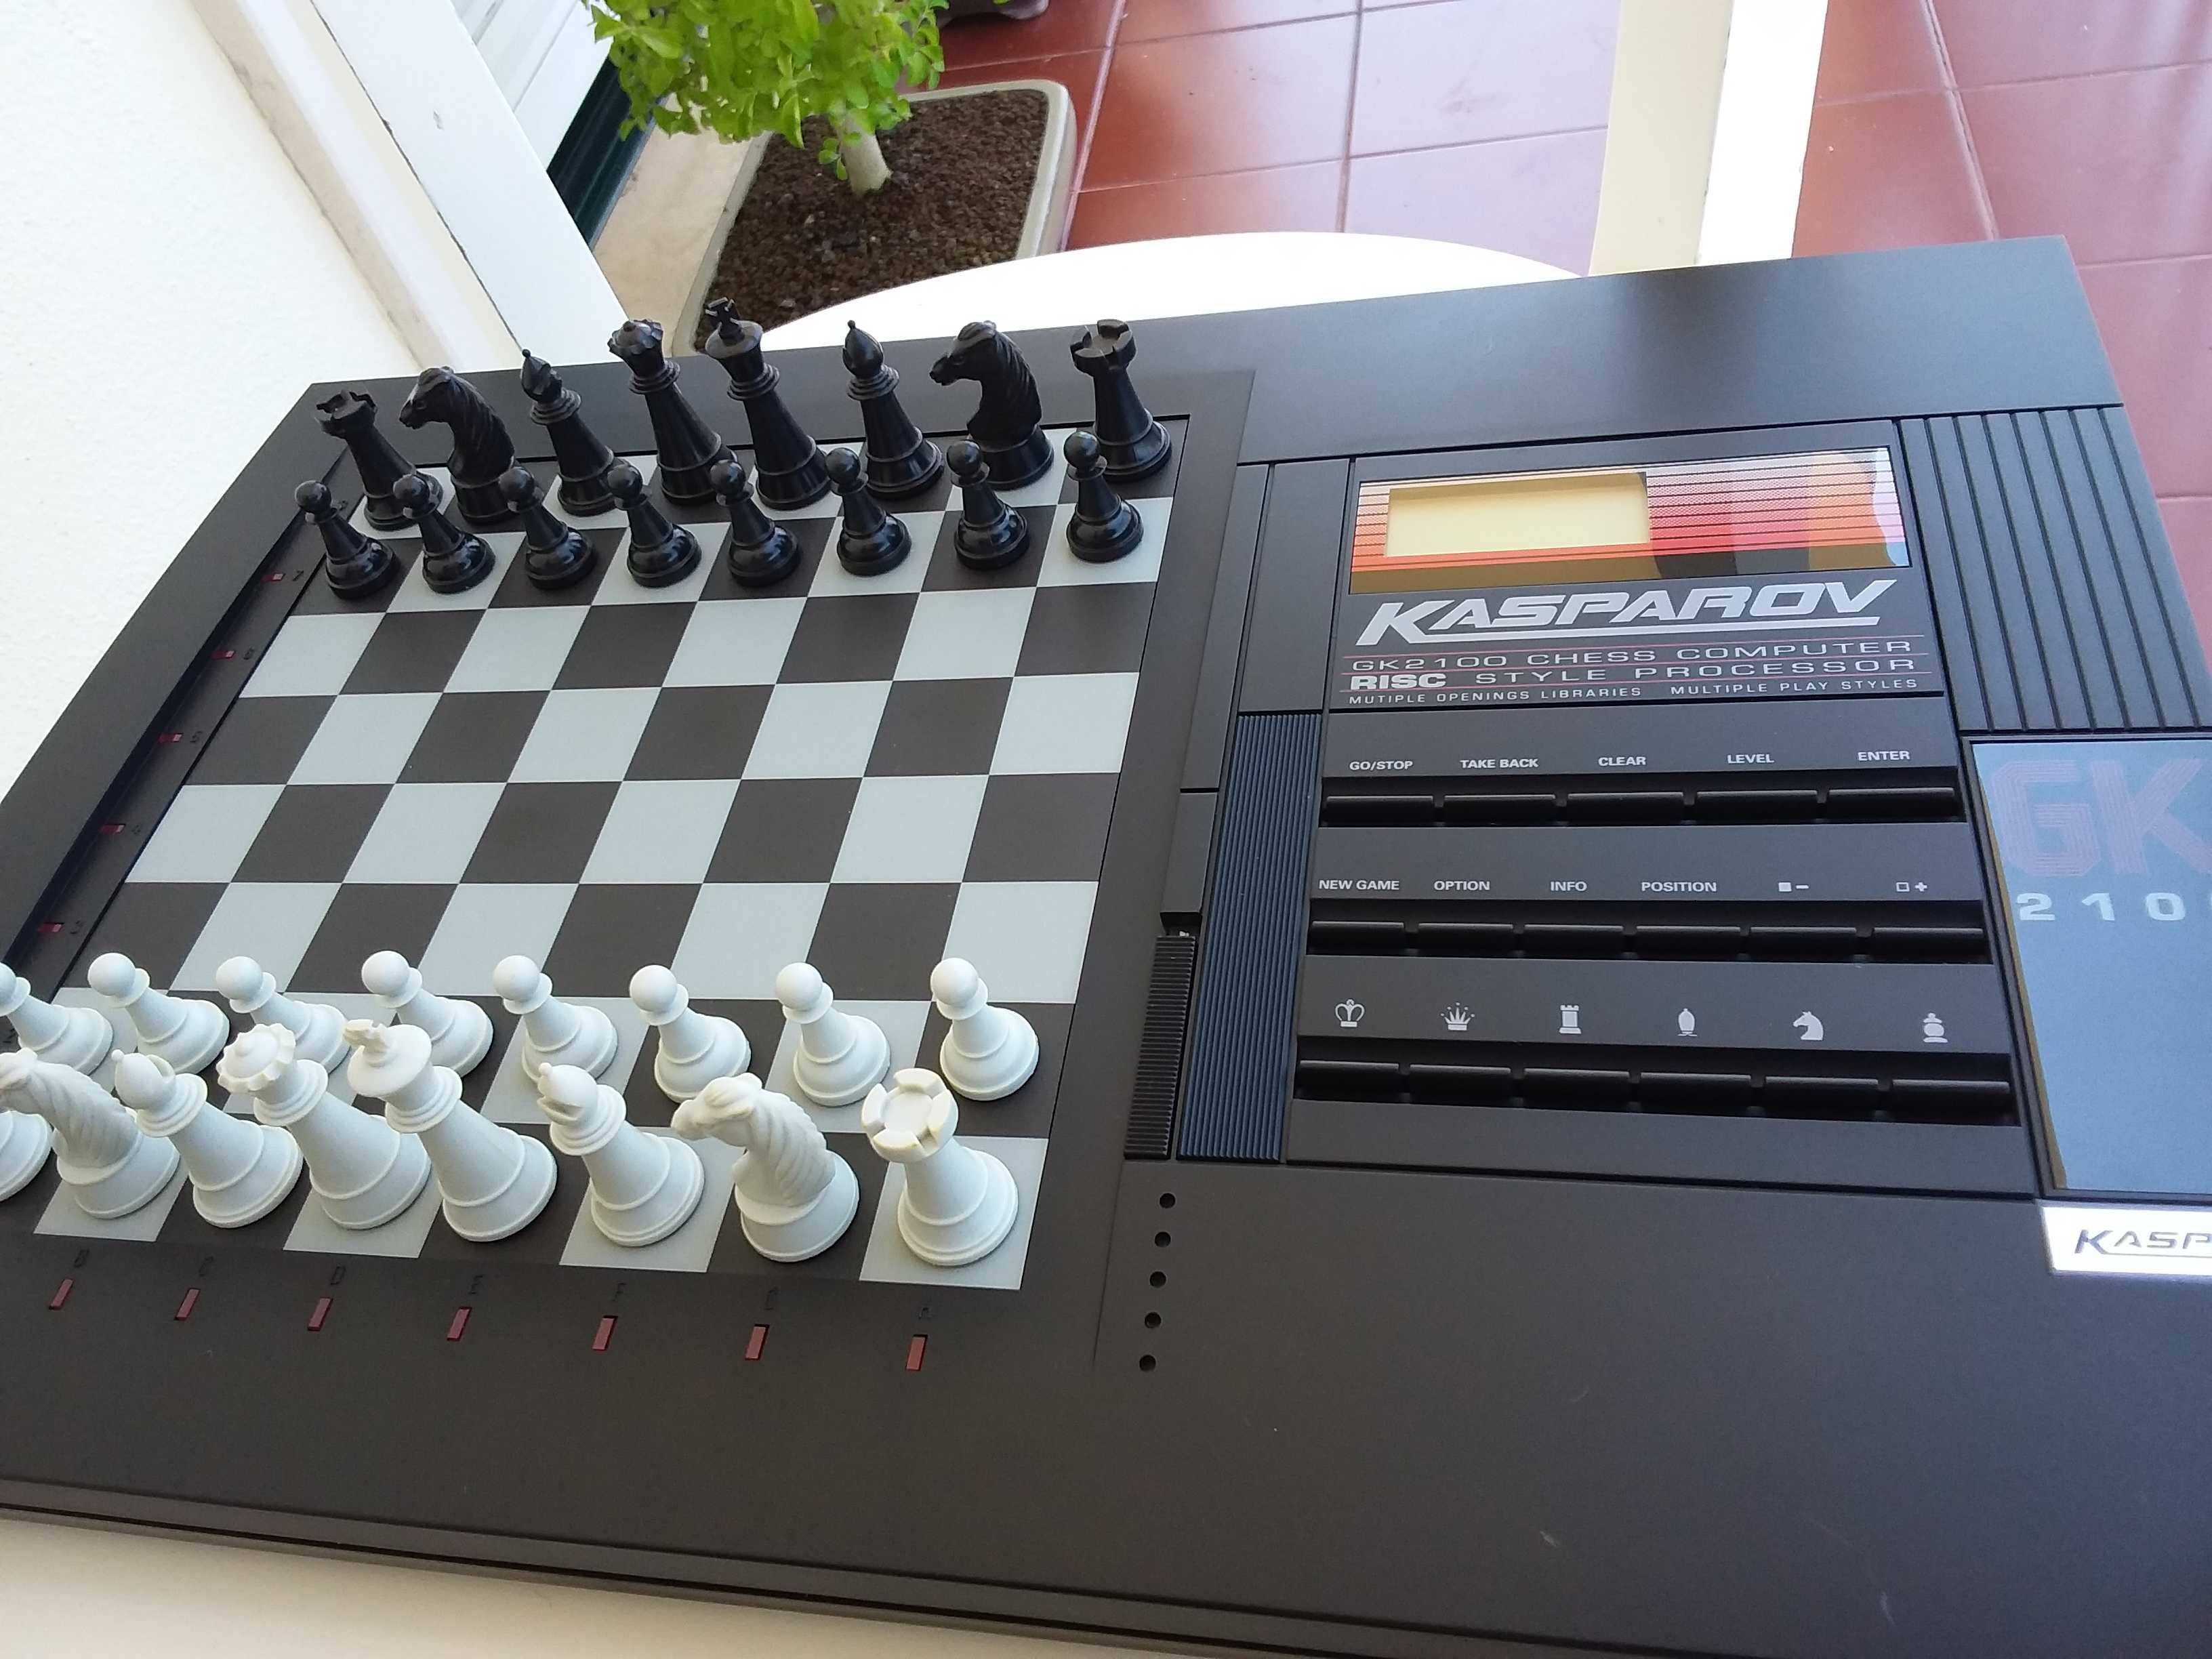 Computador Eletronico de Xadrez Garry Kasparov 2100 com 64 niveis